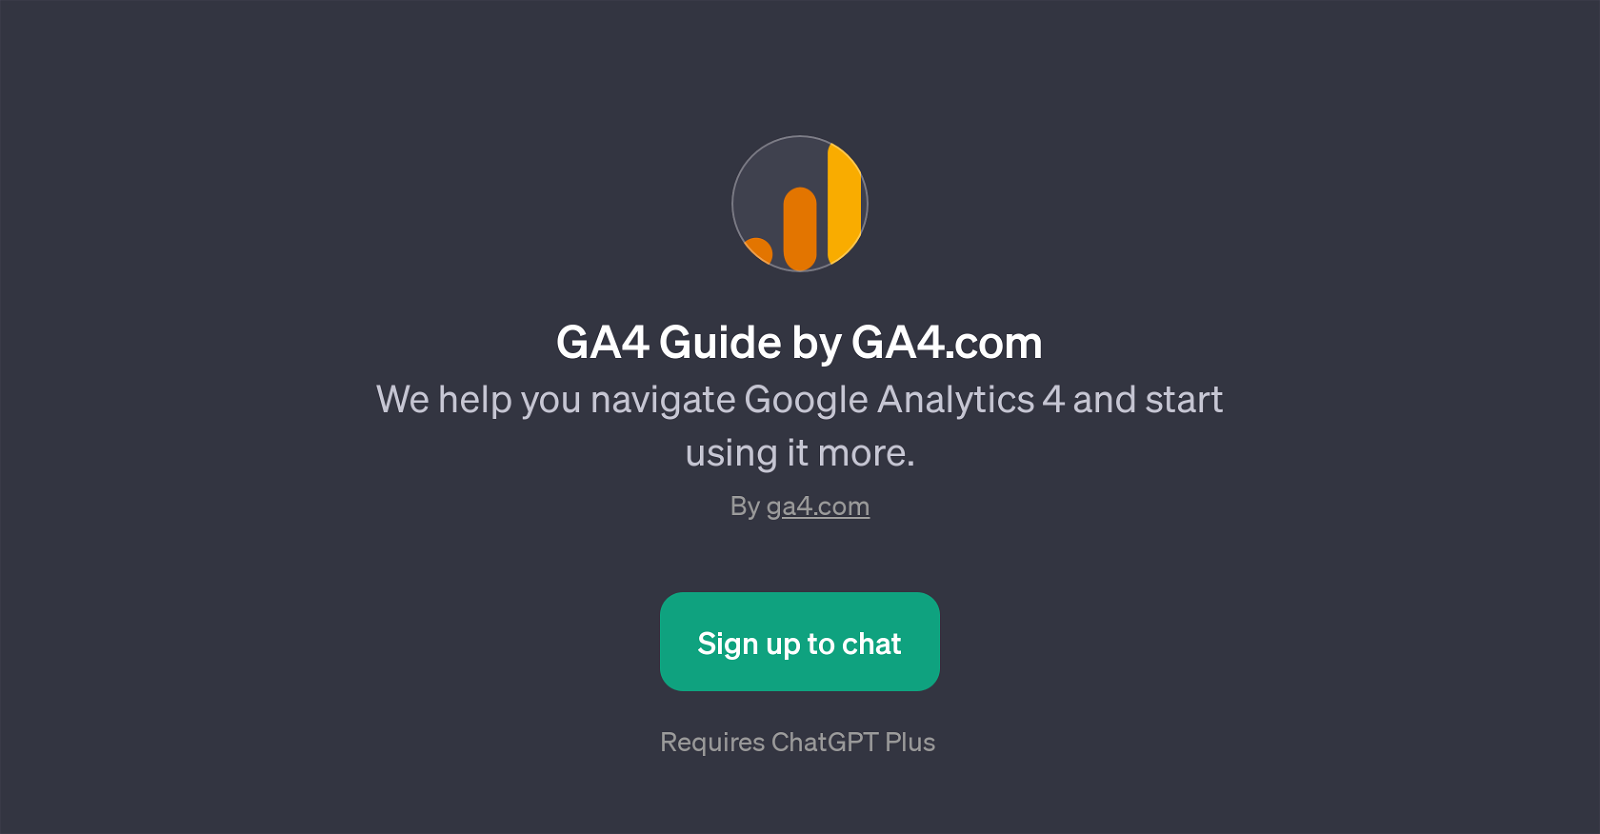 GA4 Guide by GA4.com website